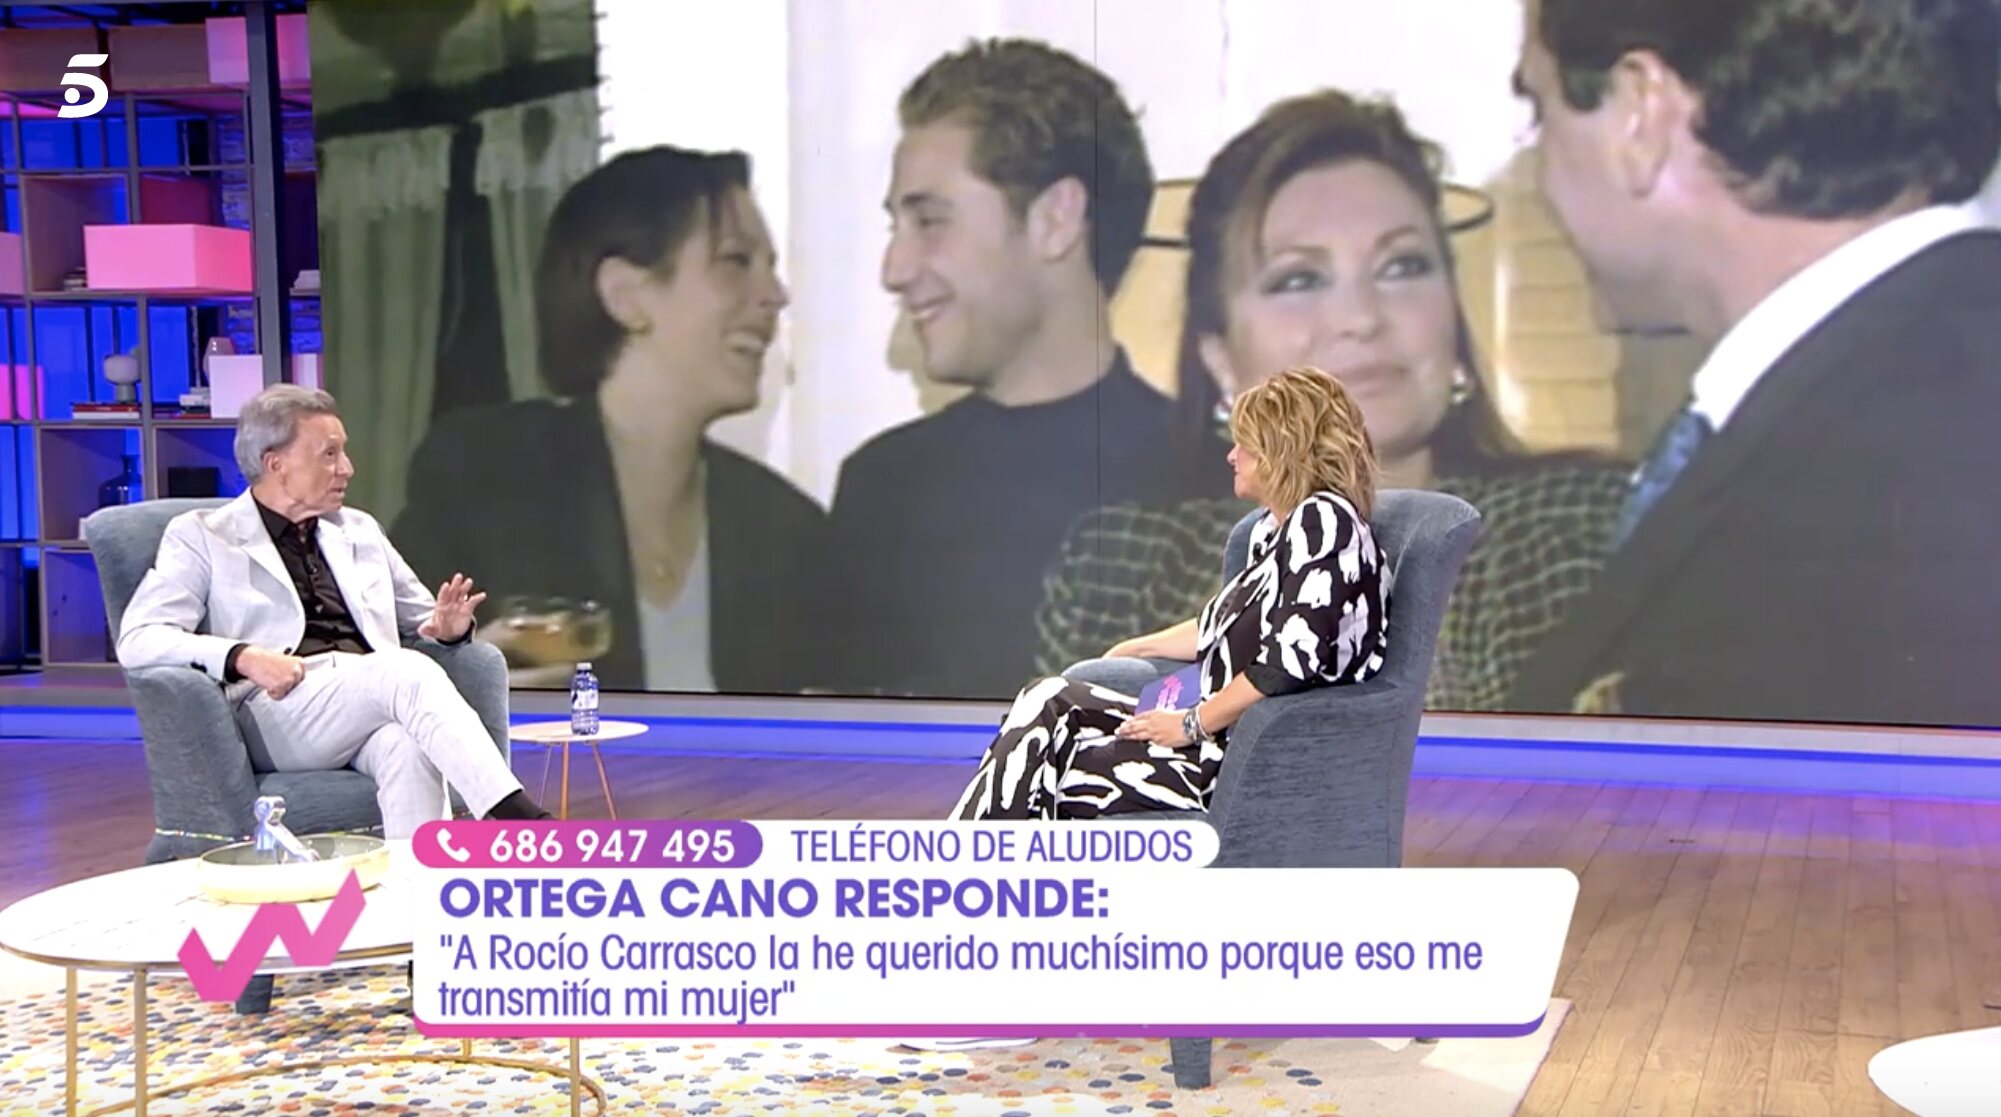 Ortega Cano asegura que le gustaría que la familia Mohedano estuviese unida | Foto: Telecinco.es